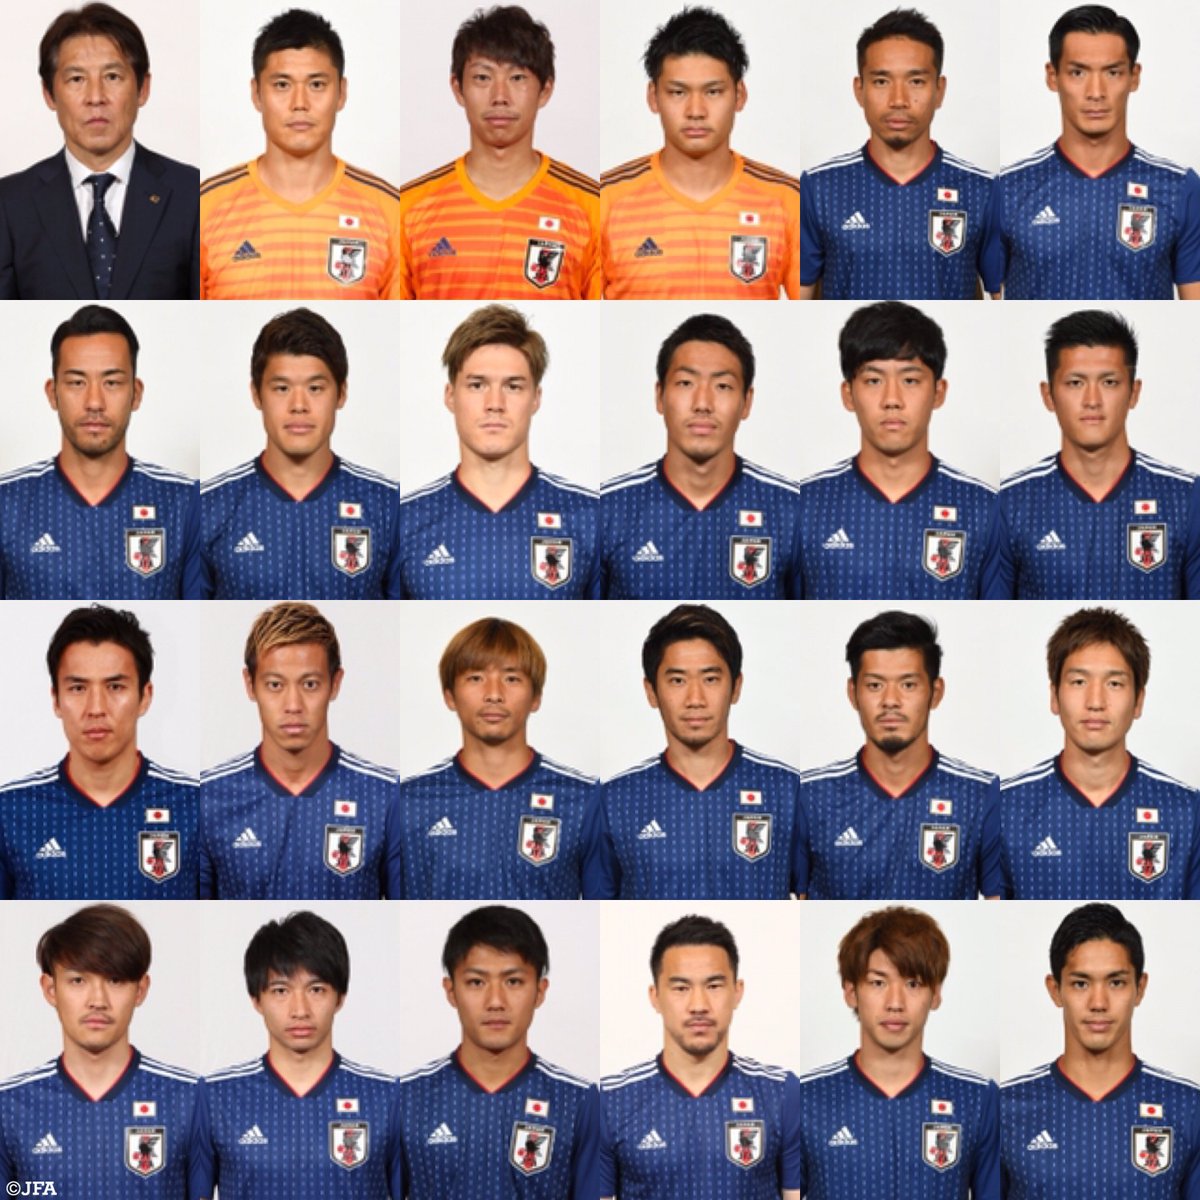 ｊリーグ 日本プロサッカーリーグ 18fifaワールドカップロシア 日本代表のメンバーが発表されました このメンバーでロシア大会に挑みます ｊリーグ Daihyo Samuraiblue